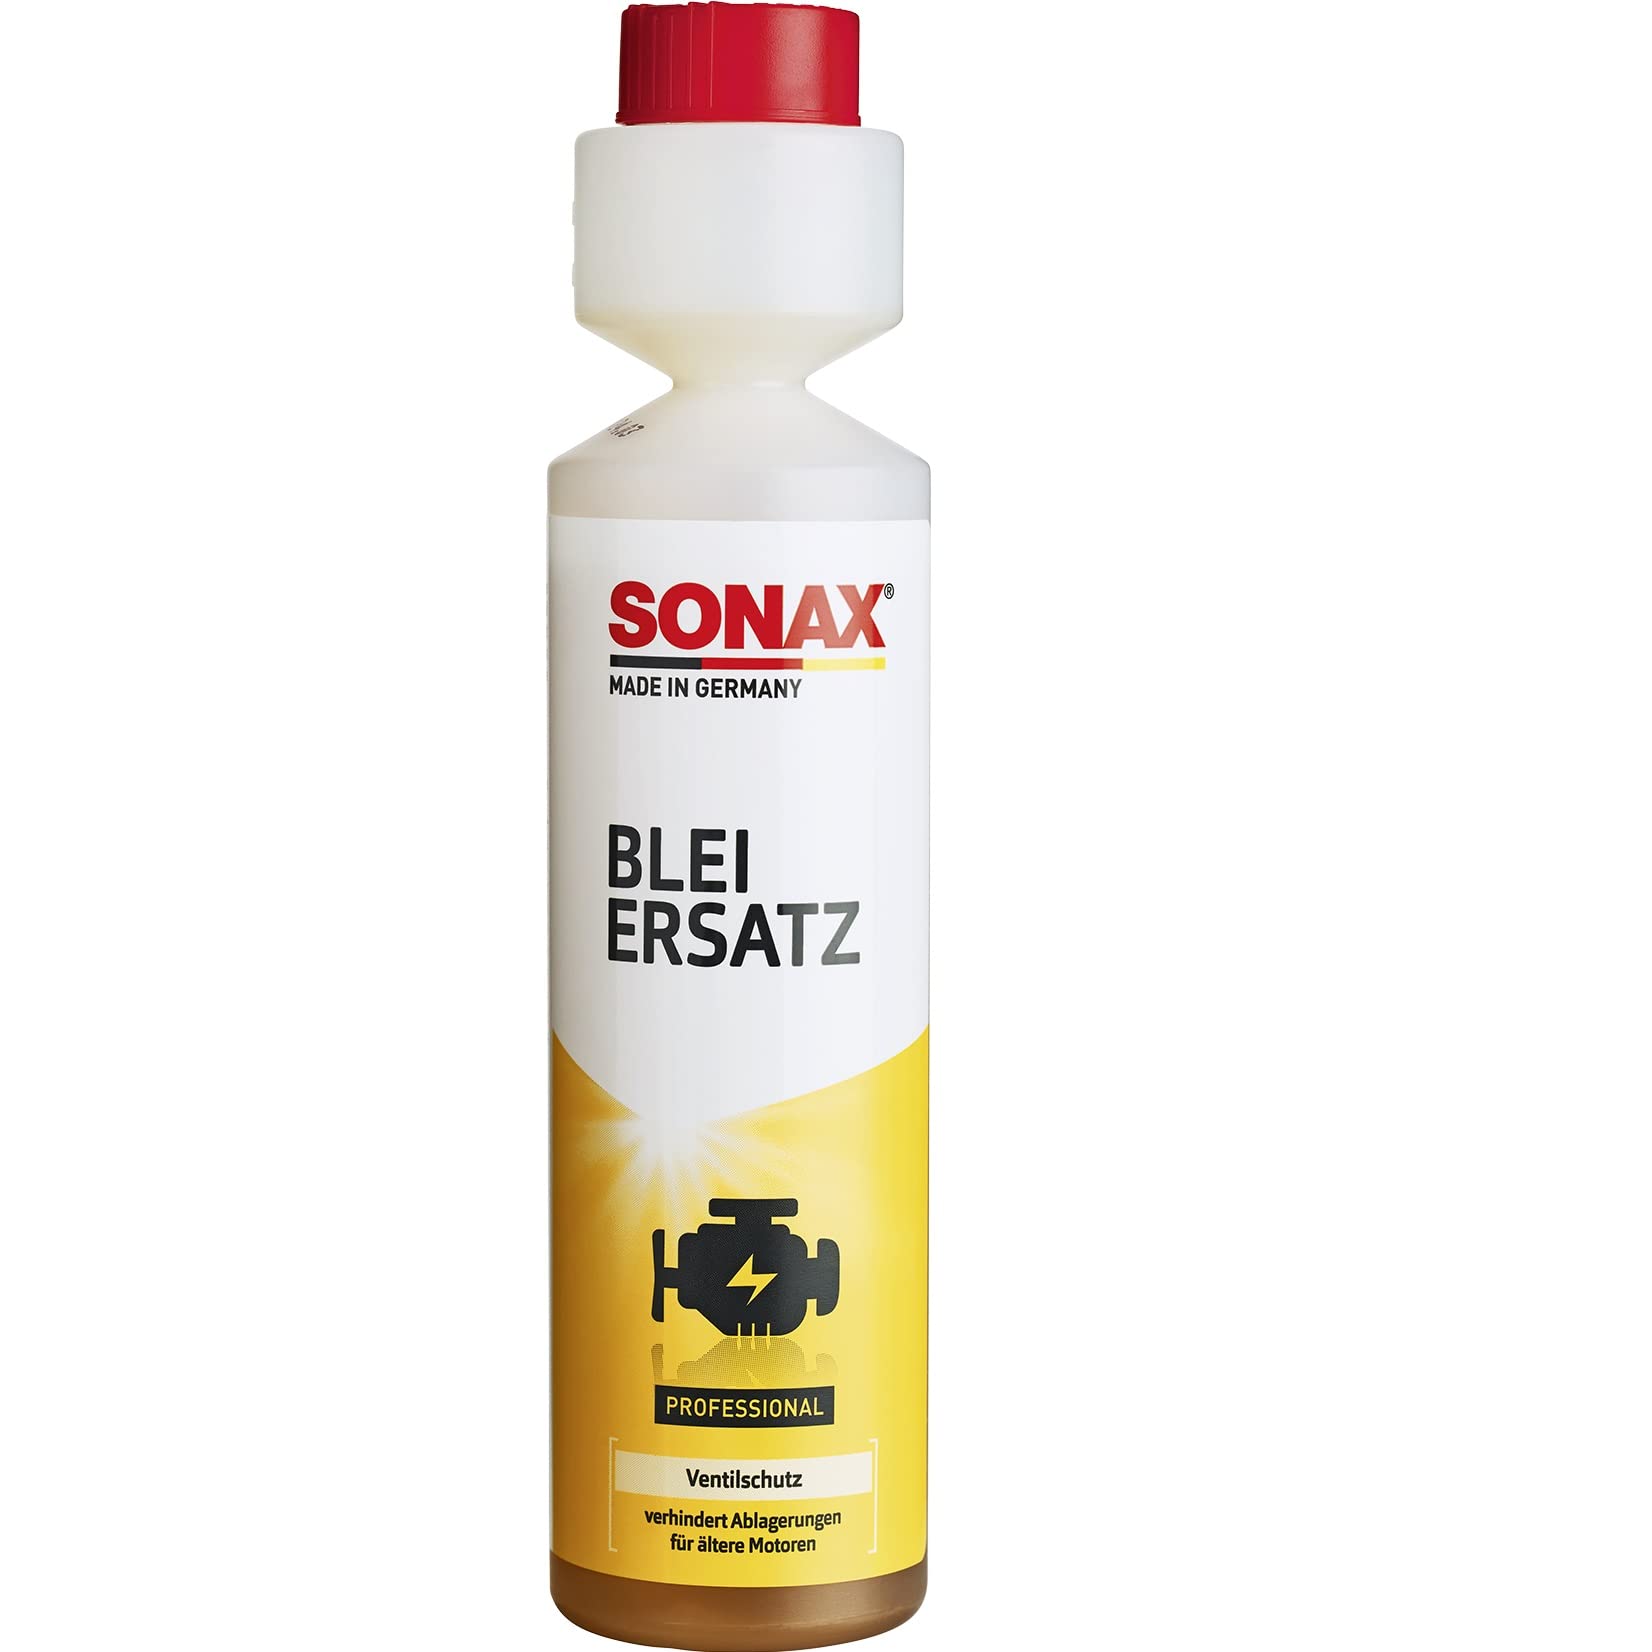 SONAX BleiErsatz (250 ml) schmiert und schützt Ventile gegen Verschleiß und ersetzt so die schmierende Wirkung des Bleis | Art-Nr. 04121410 von SONAX